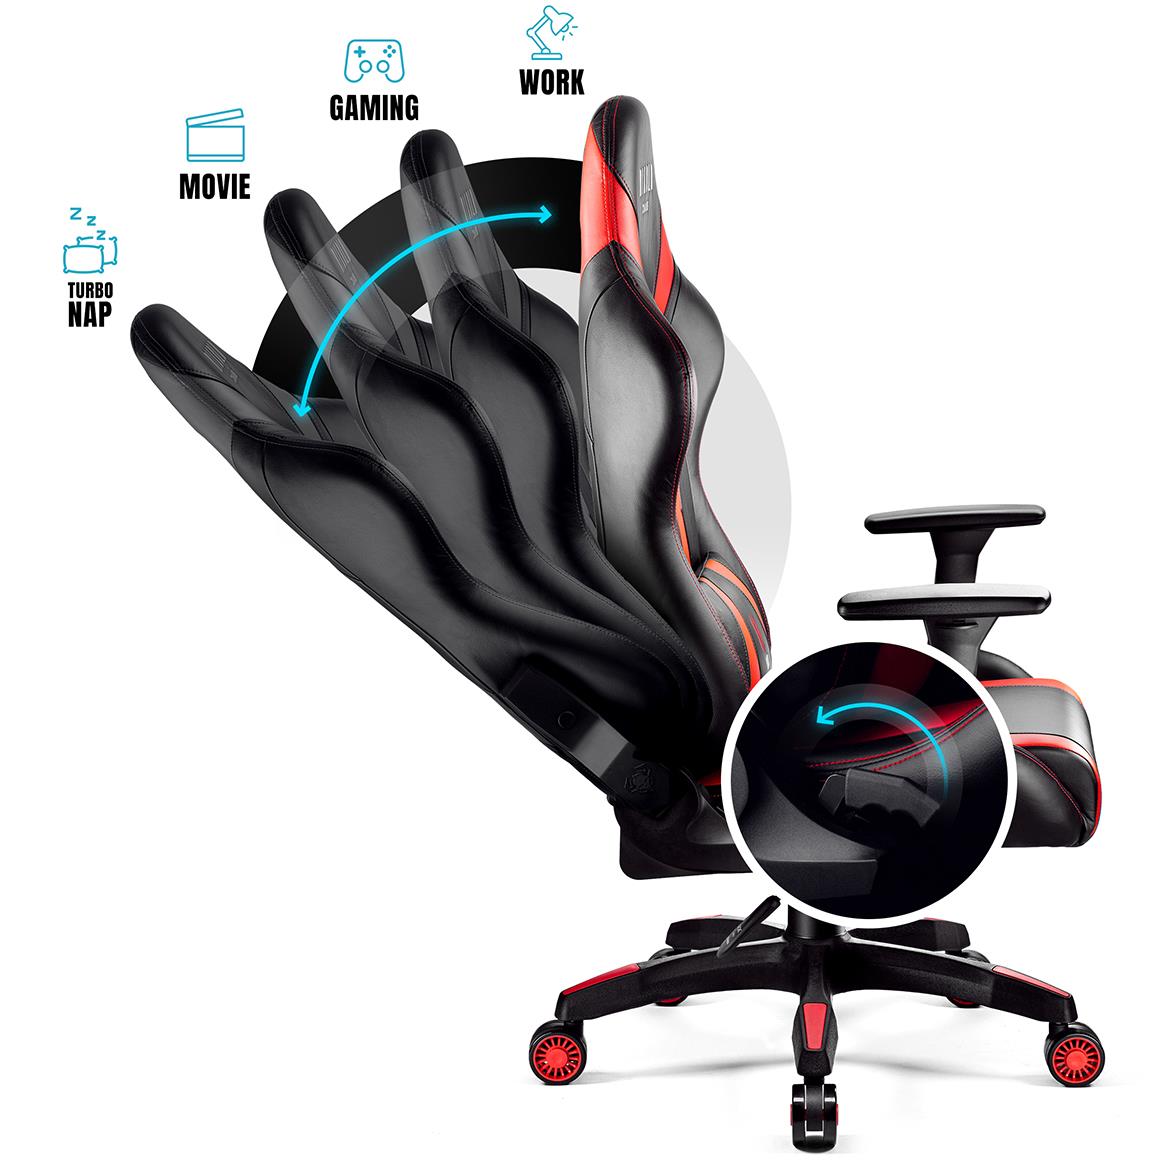 King Diablo X-Horn 2.0 kancelarijska stolica 73x59x133 cm crno crvena